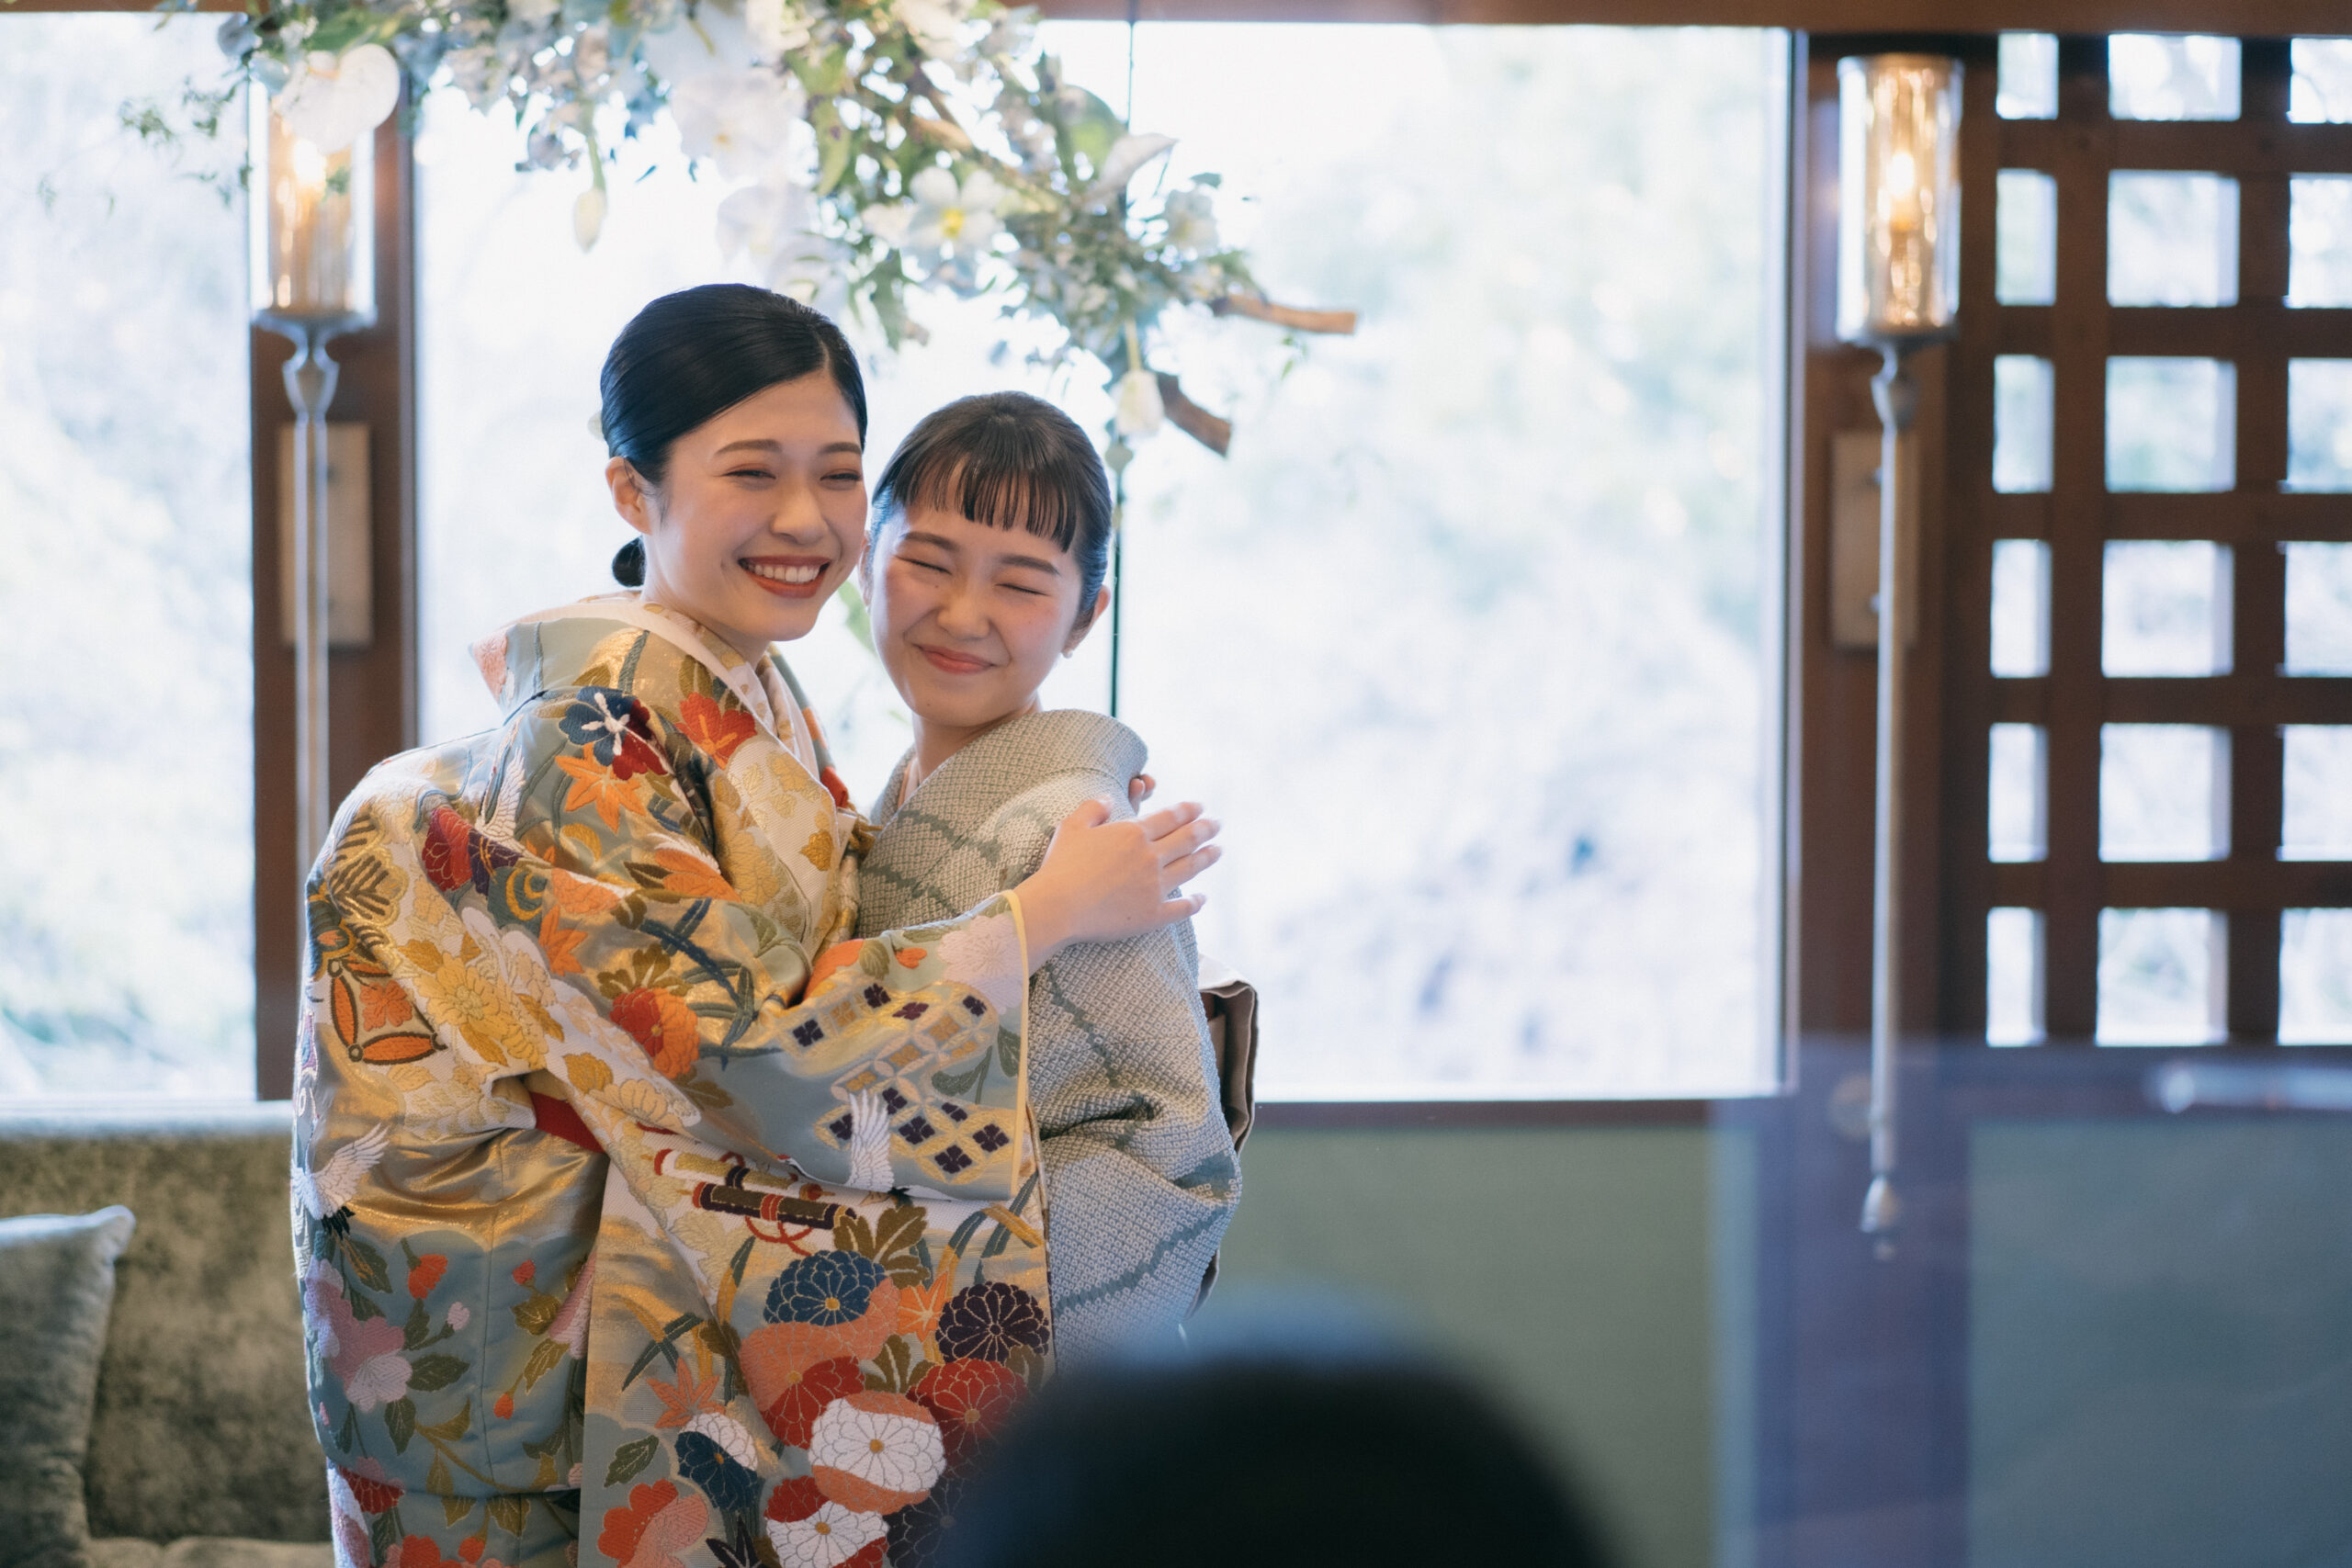 ザソウドウヒガシヤマ京都にてゲストの方もお着物をお召になられた京都らしいご結婚式のご紹介